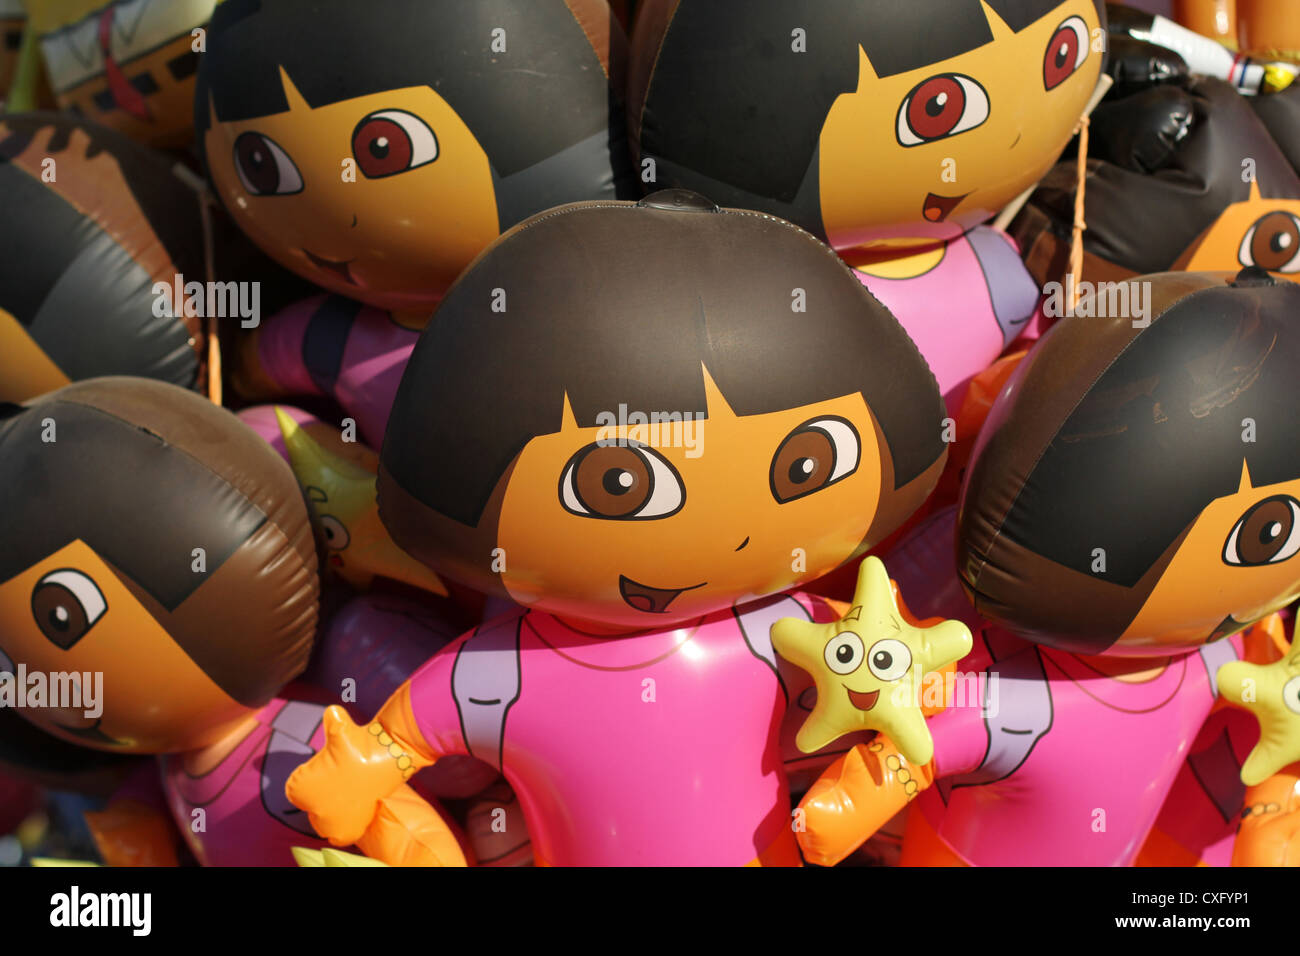 A bunch of Dora the Explorer balloons. Stock Photo